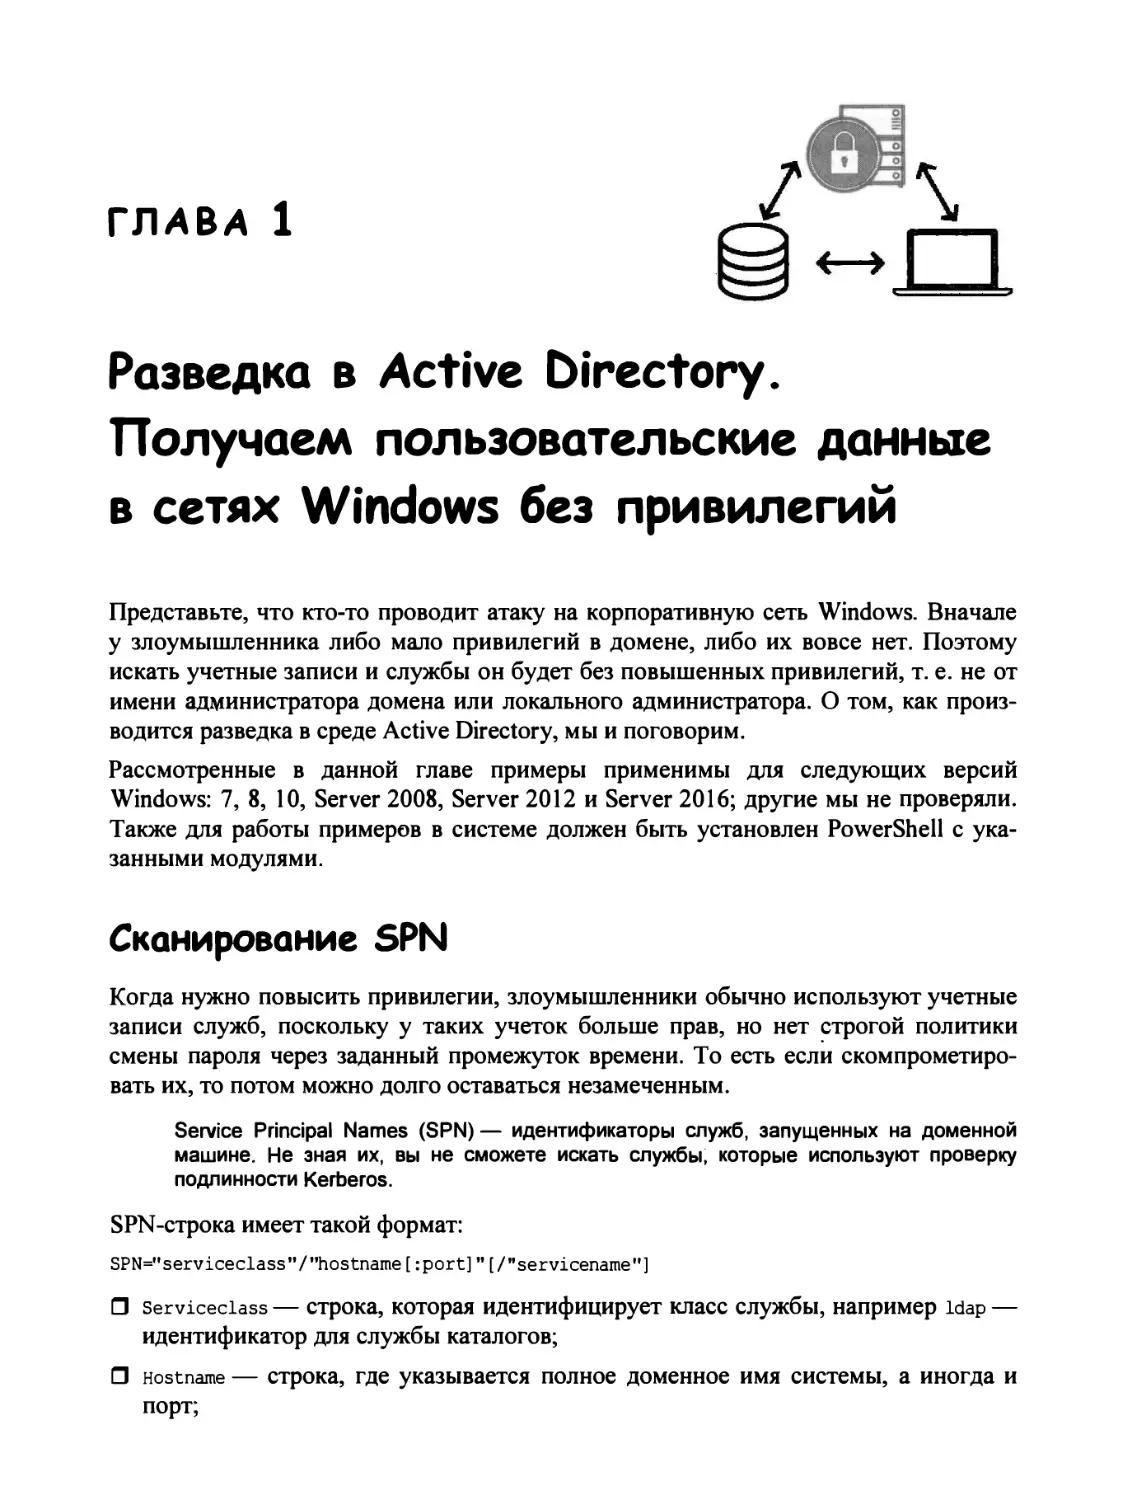 Глава 1. Разведка в Active Directory. Получаем пользовательские данные в сетях Windows без привилегий
Сканирование SPN